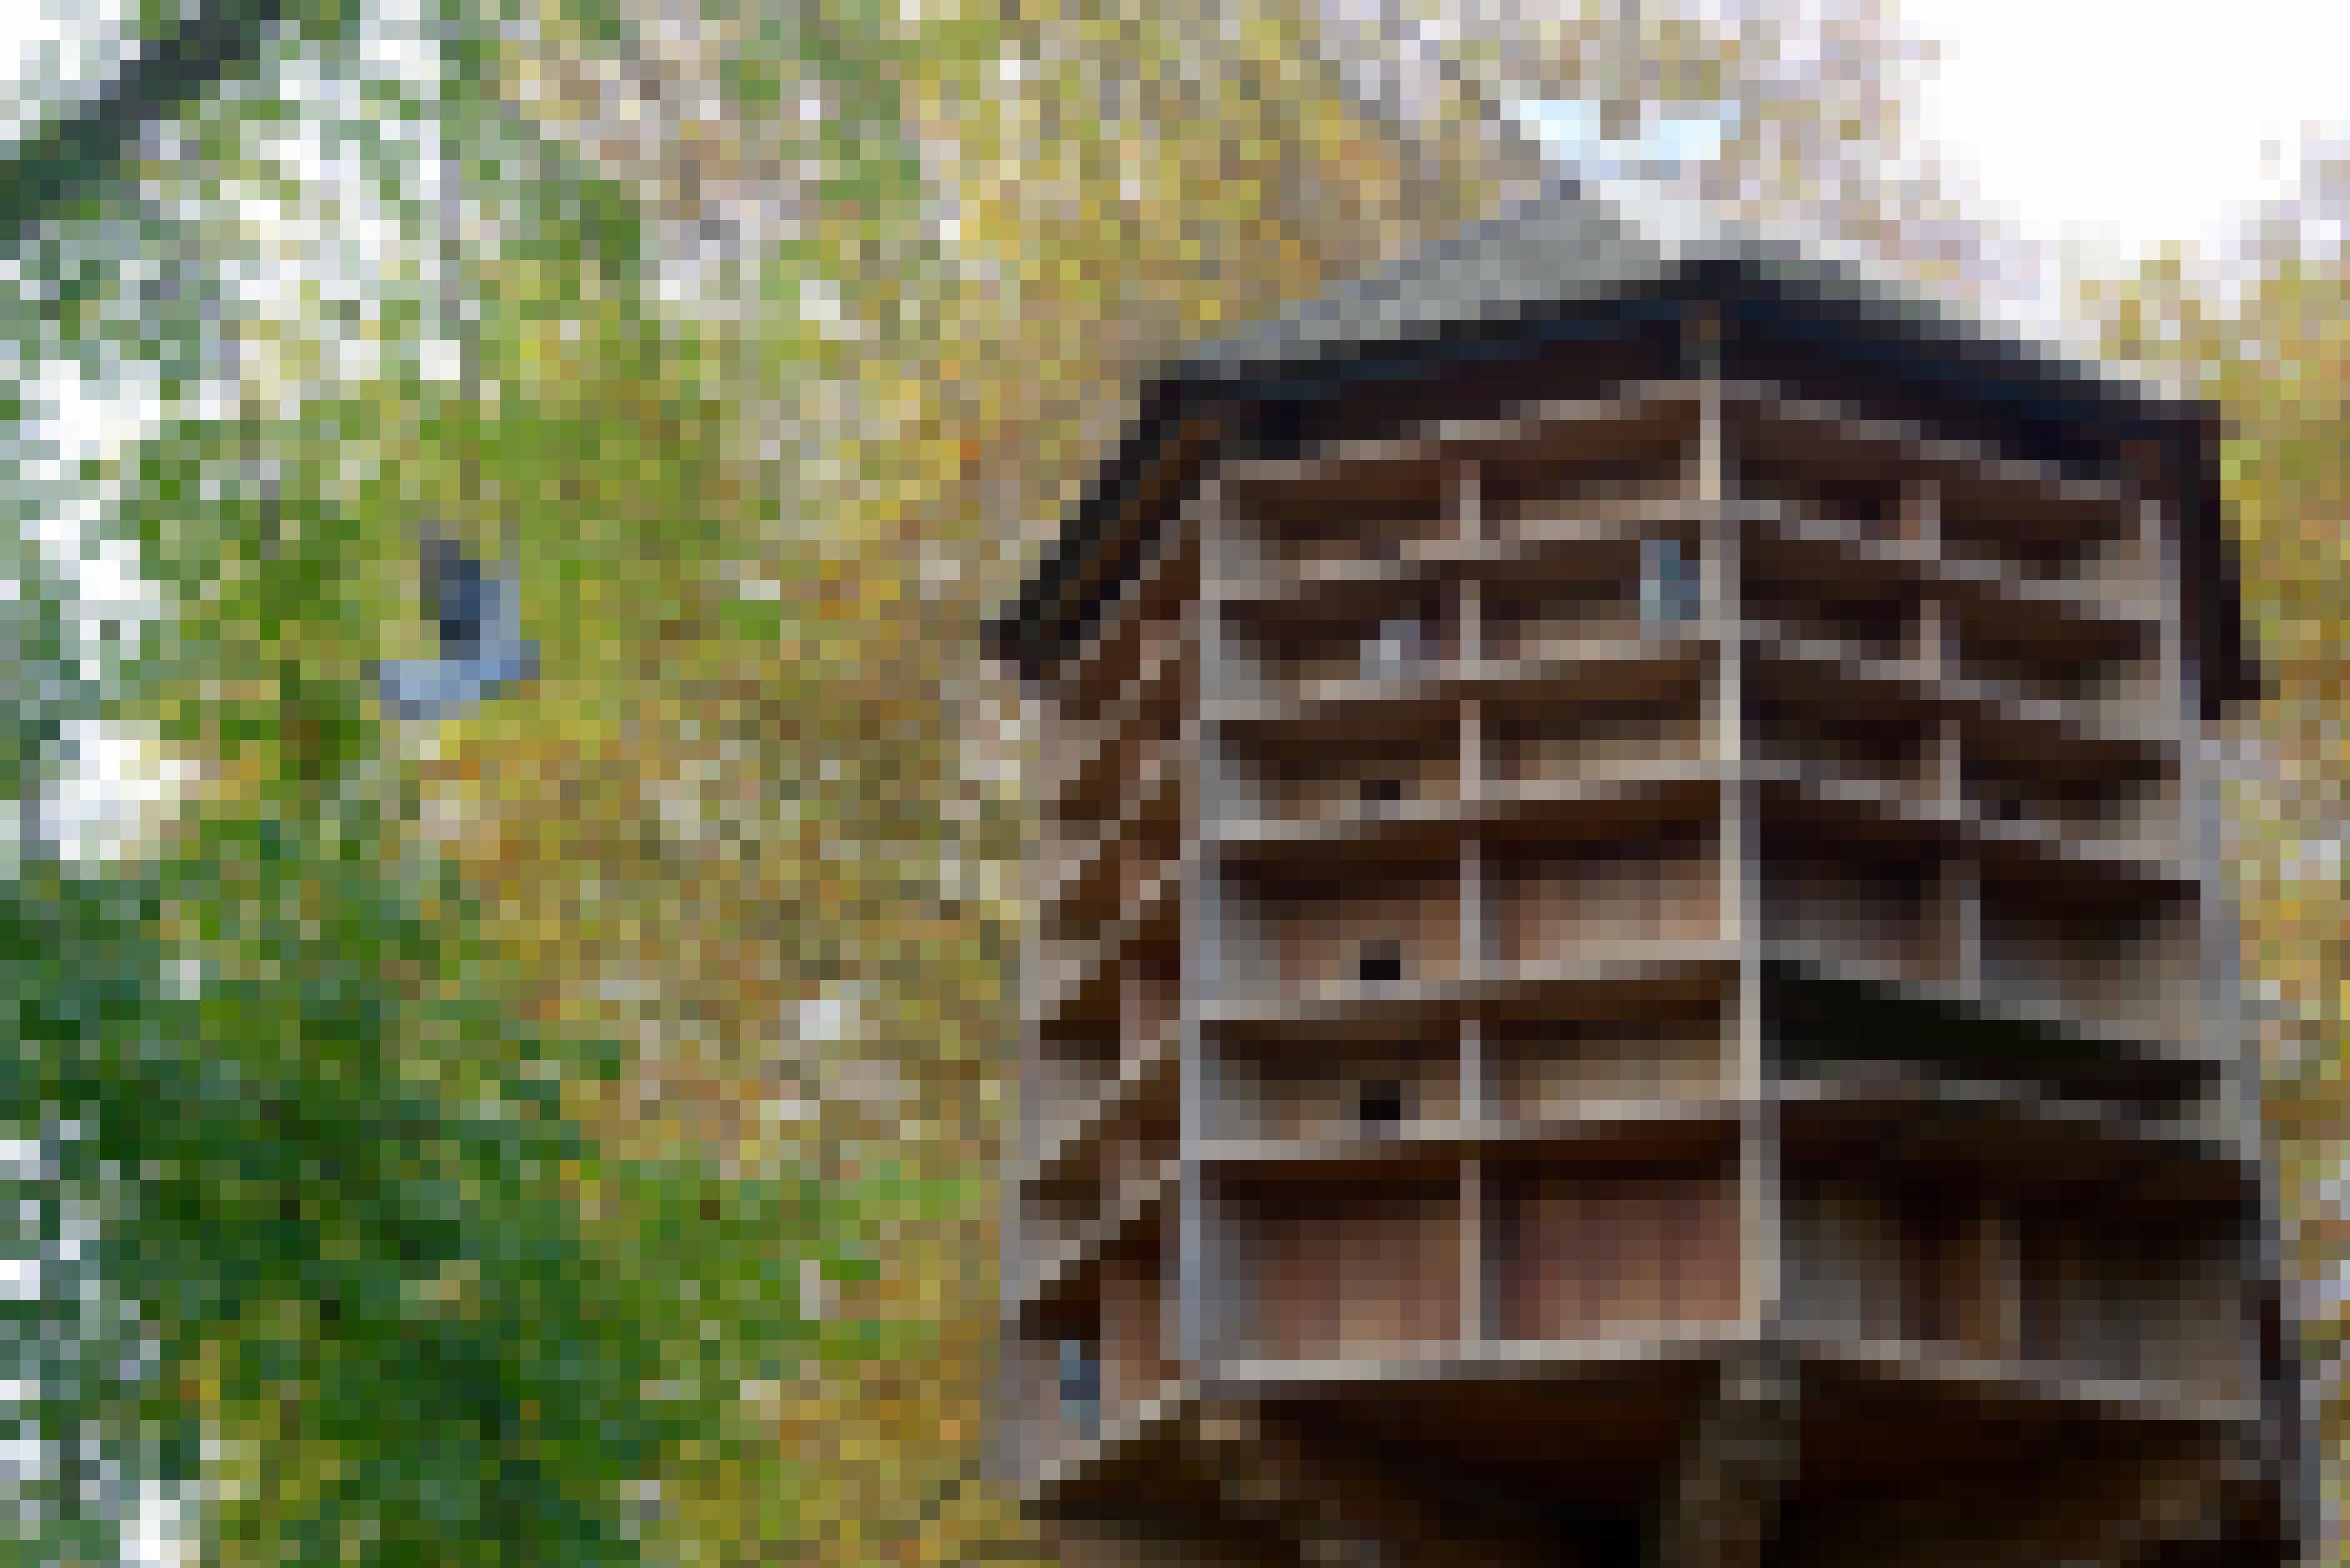 ein Vogelhaus mit vielen Vögeln darin [AI]